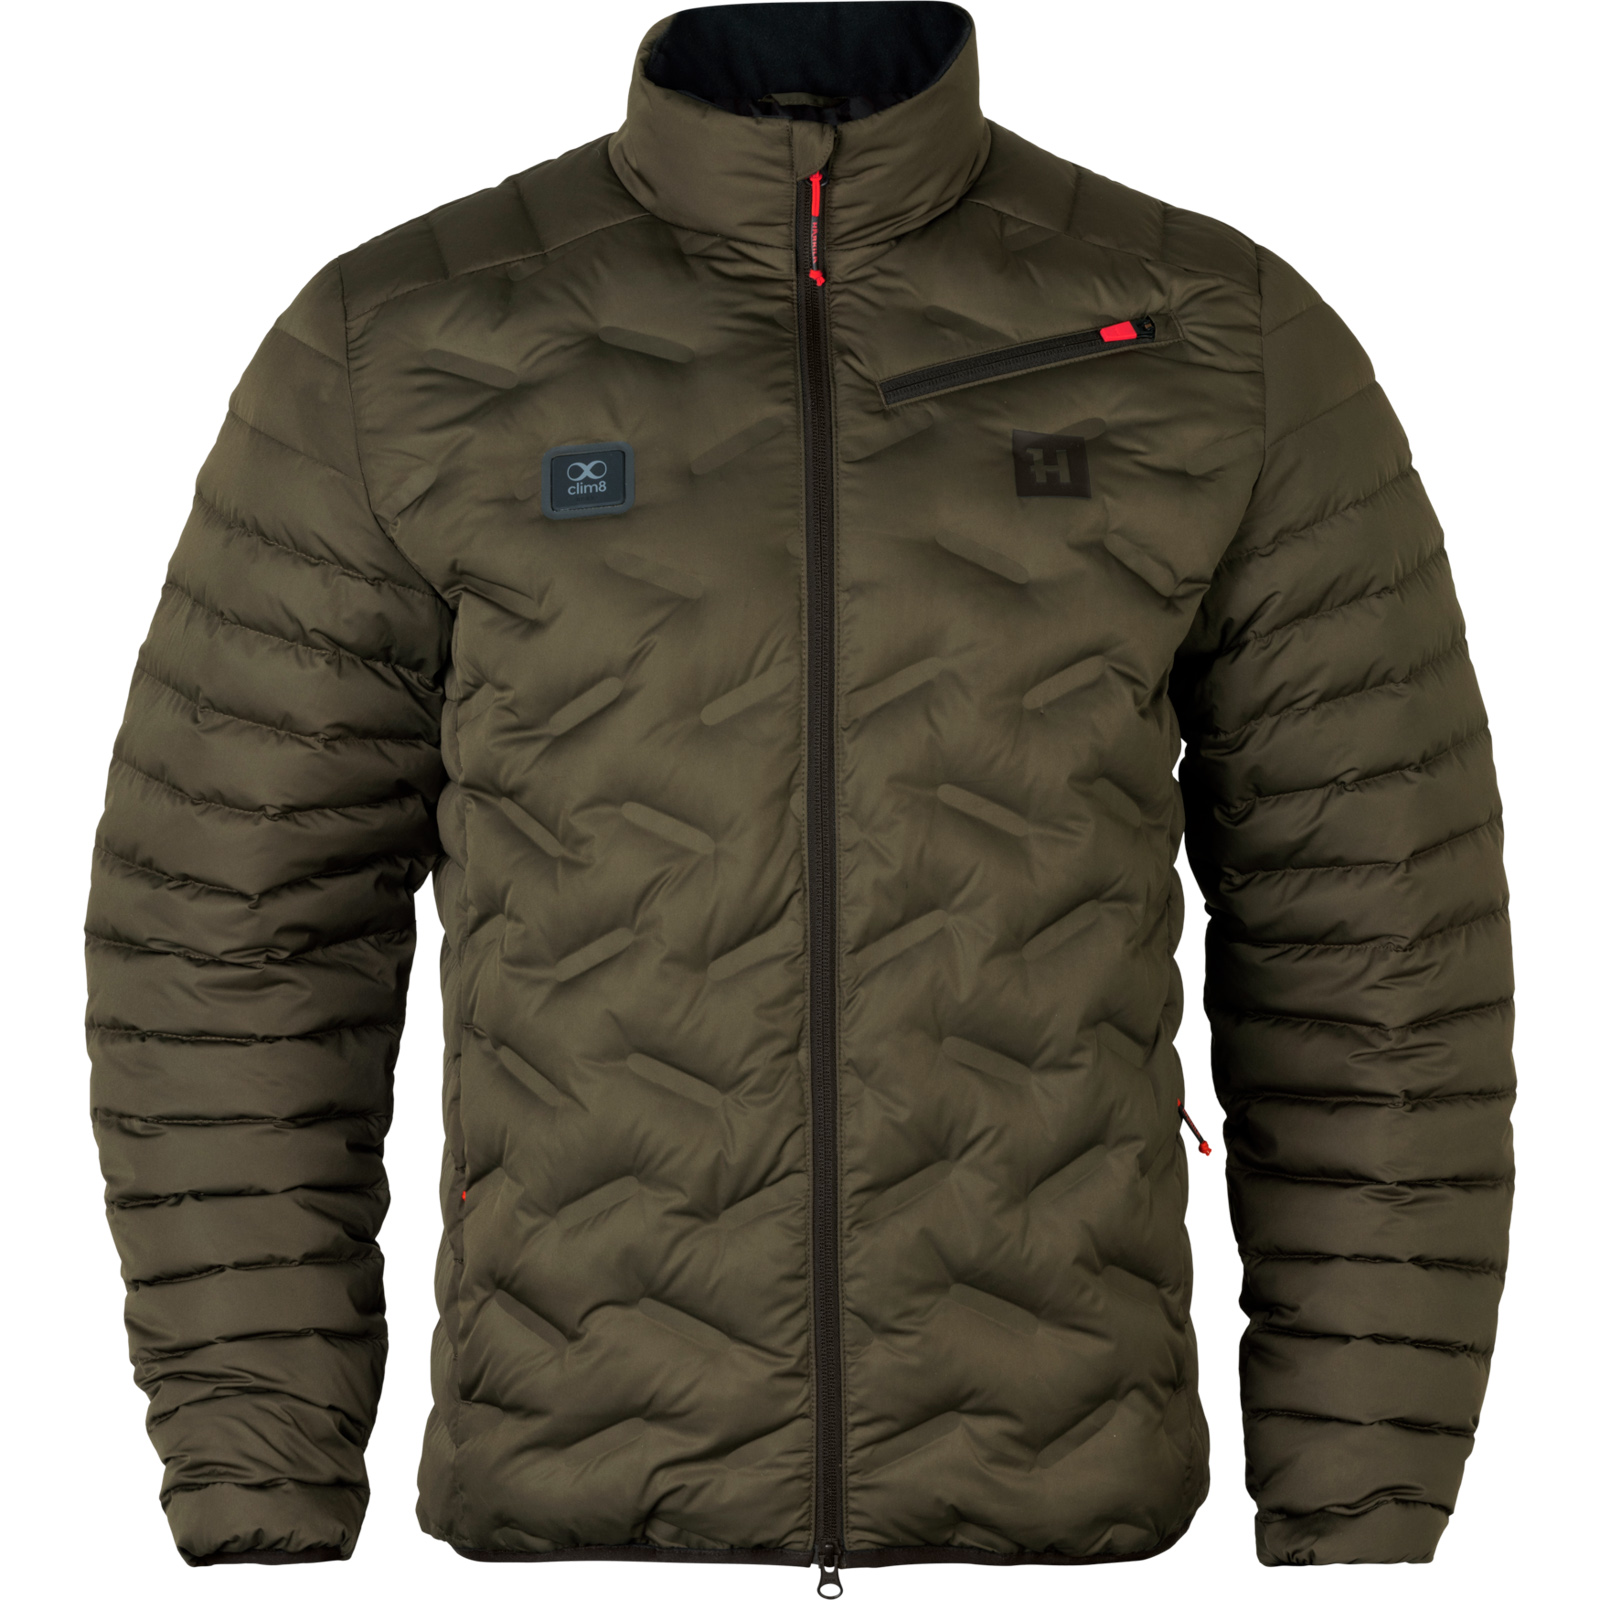 La splendida giacca in piumino termoregolabile intelligente Härkila Clim8, irresistibile per design, comfort, materiali e altissima tecnologia.